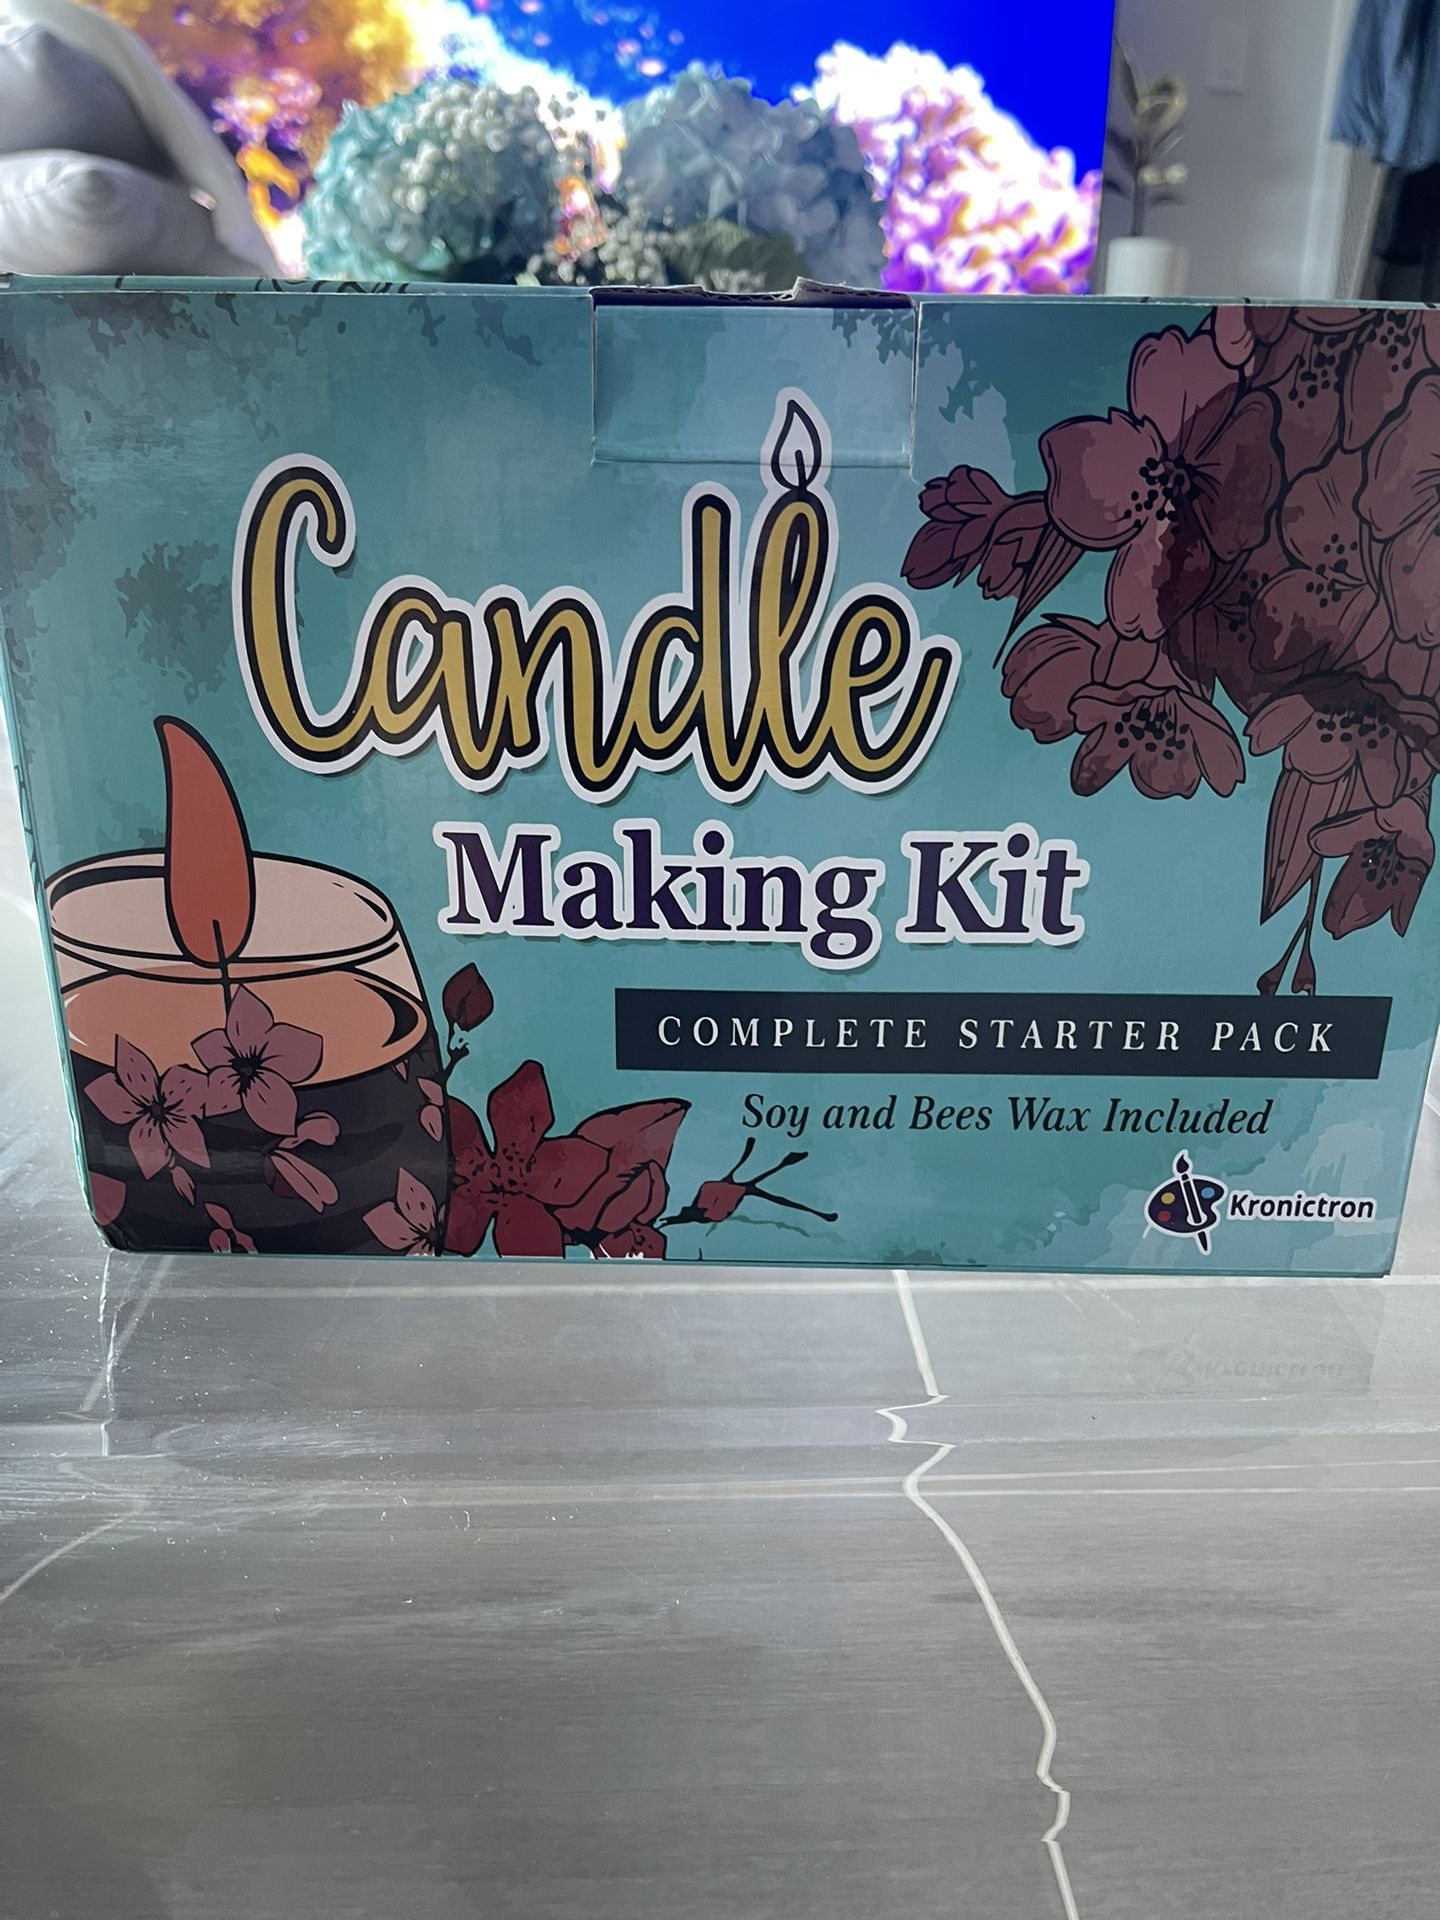 Candle making kit 